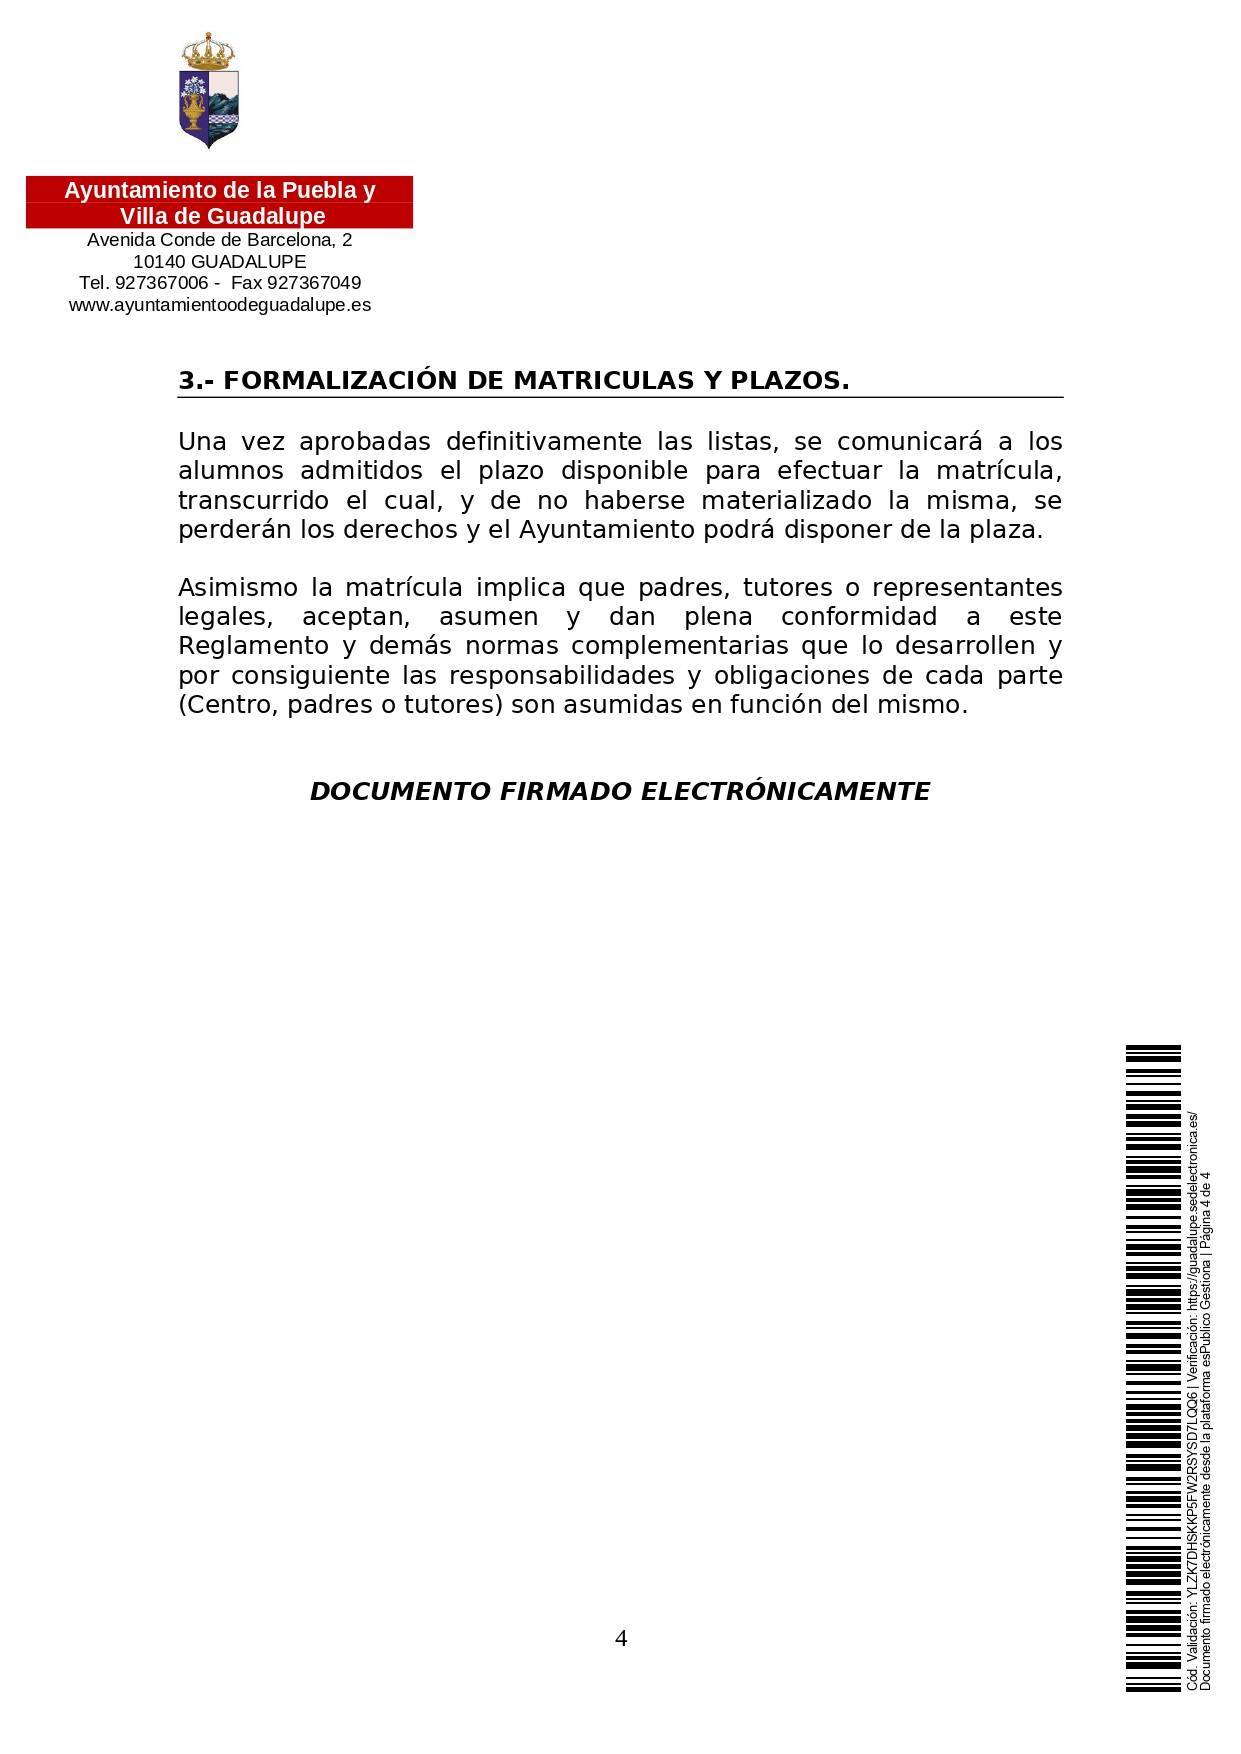 Abierto el plazo de matriculación para la guardería (2021) - Guadalupe (Cáceres) 5